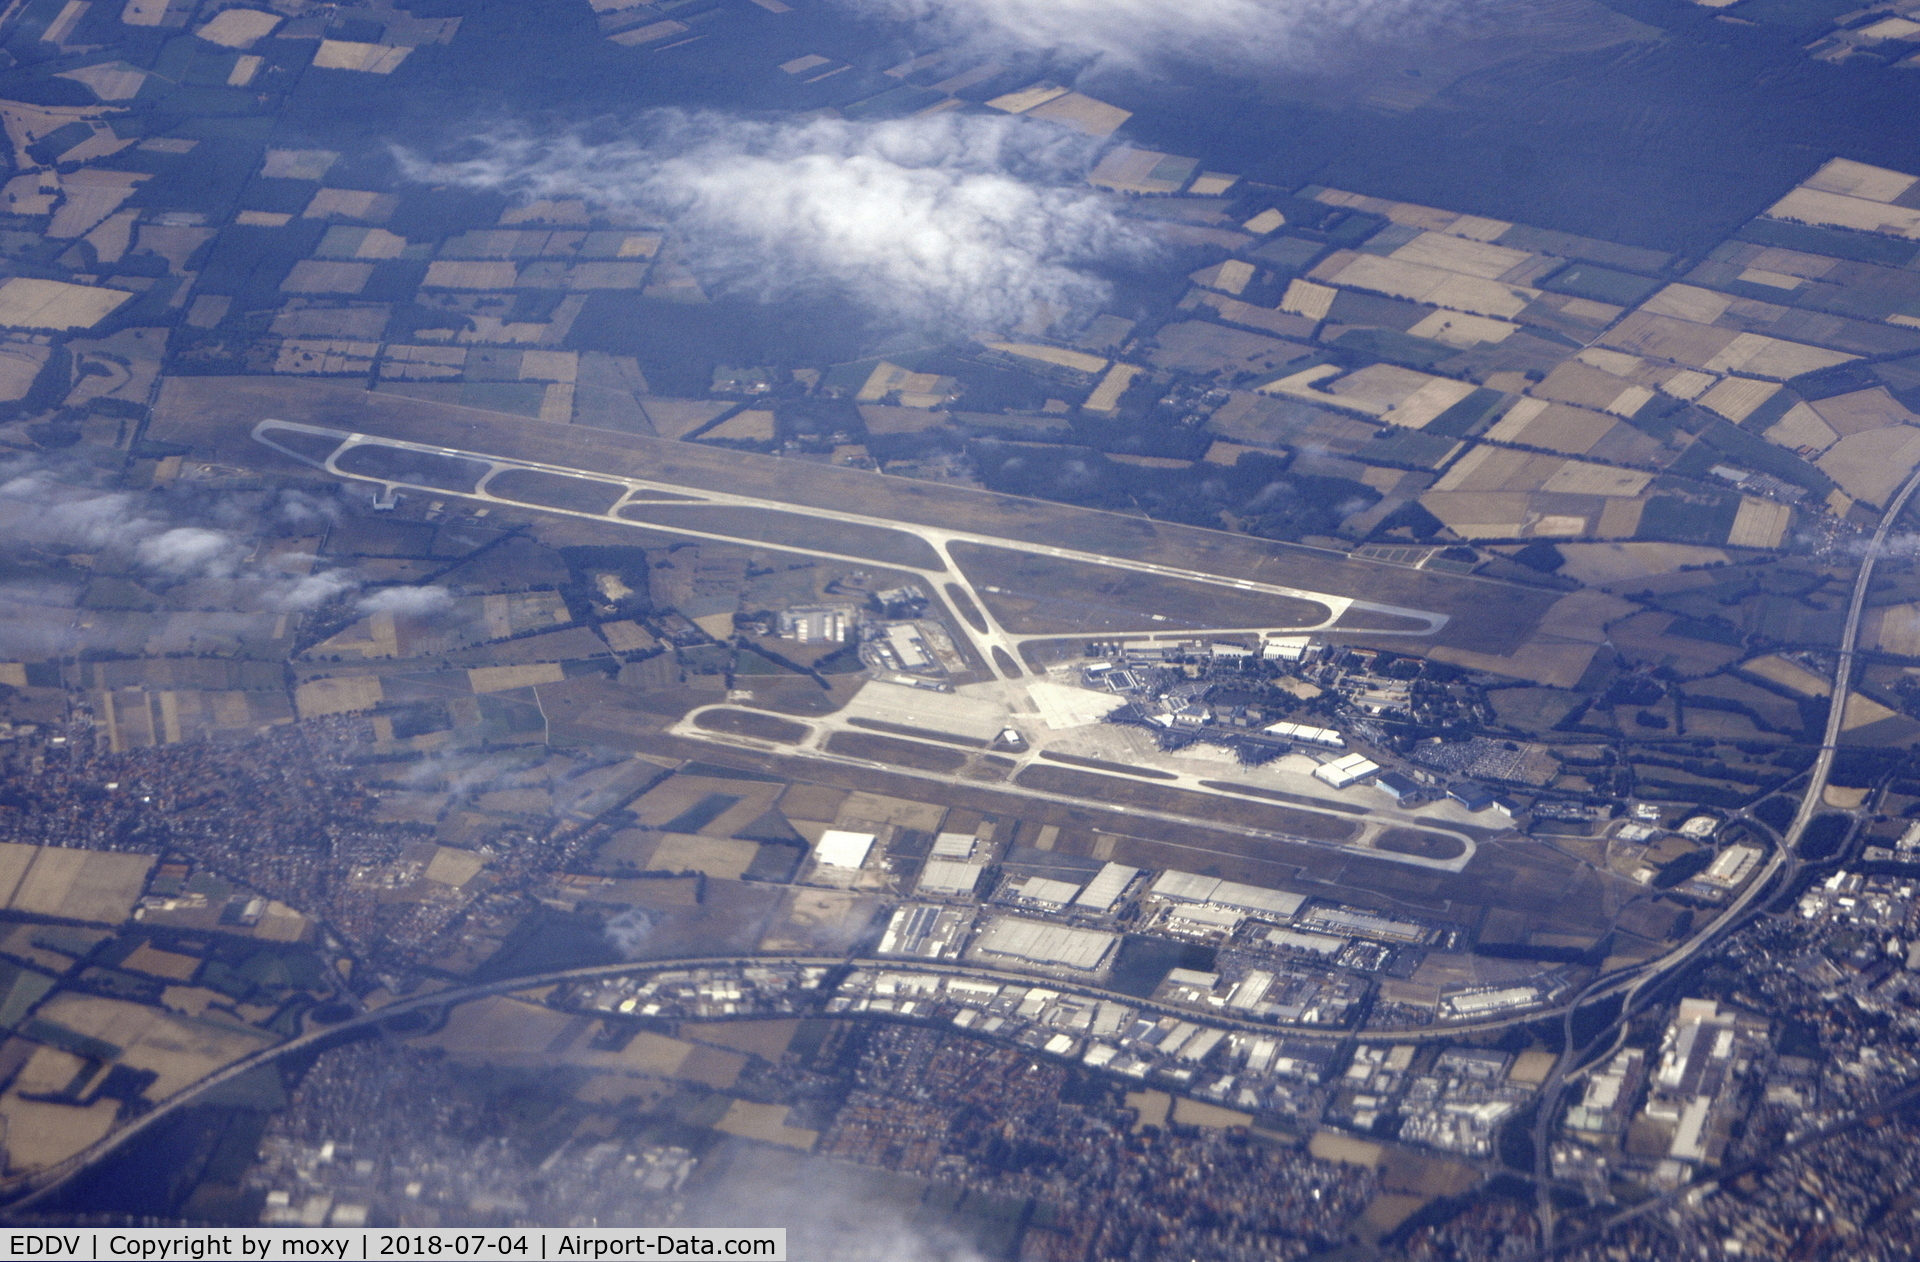 Hanover/Langenhagen International Airport, Hanover Germany (EDDV) - Hanover Airport taken at about 32000 ft from G-EUYP